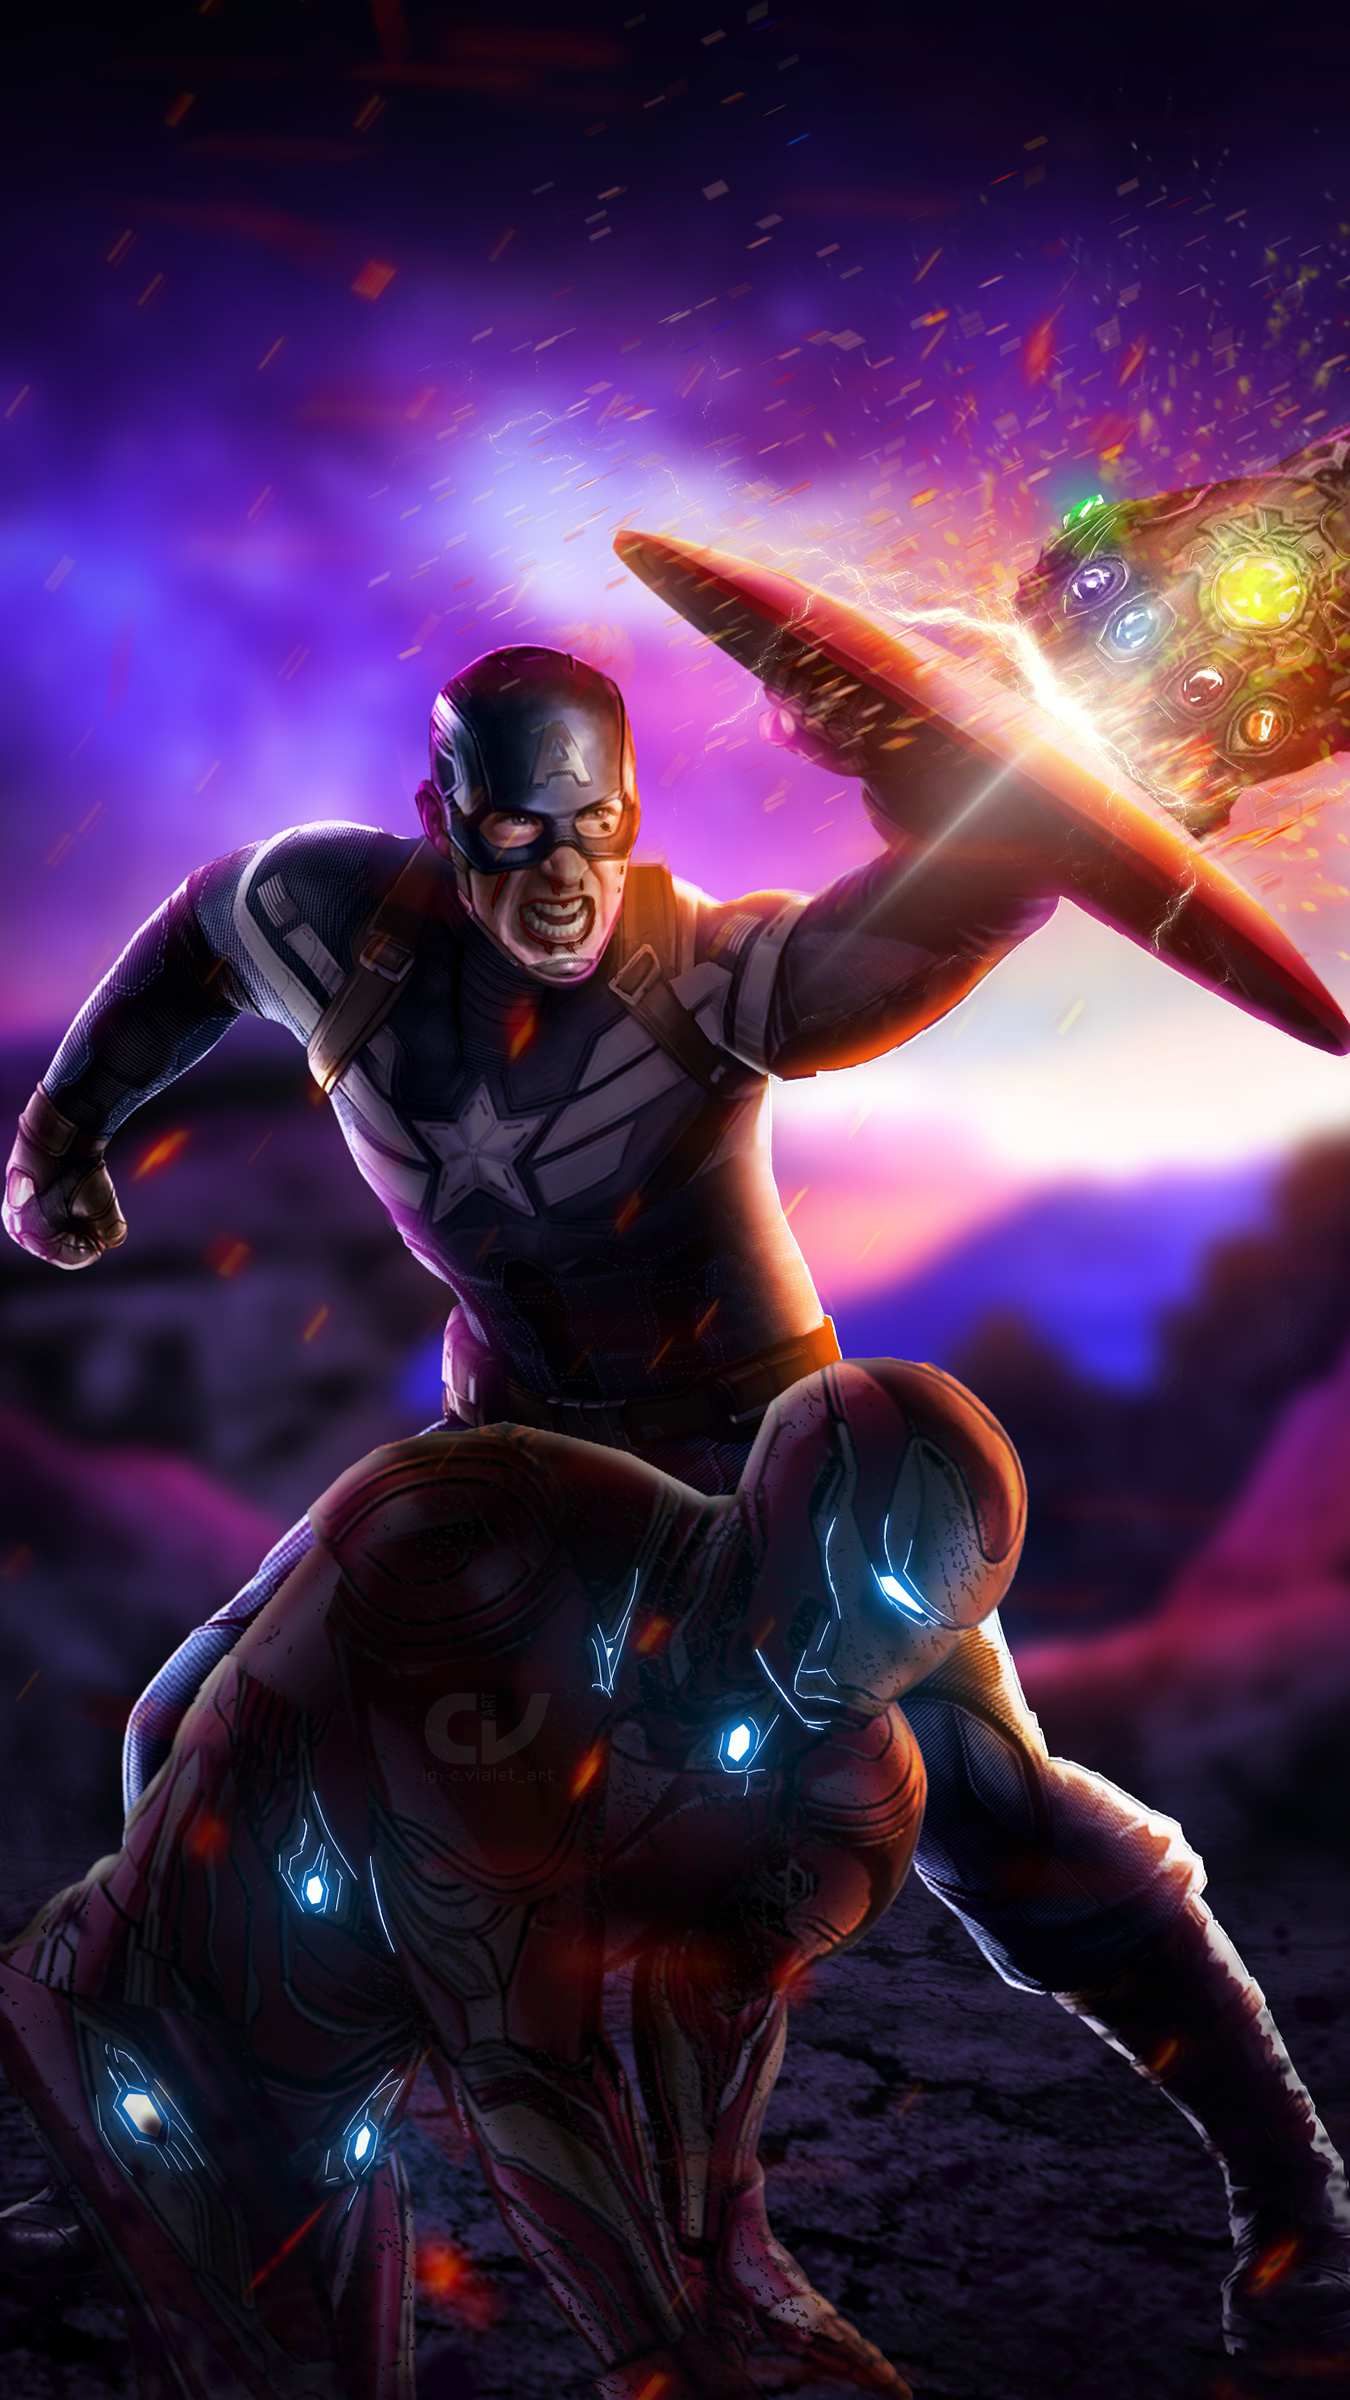 16+] Captain America Vs Thanos Wallpapers - WallpaperSafari